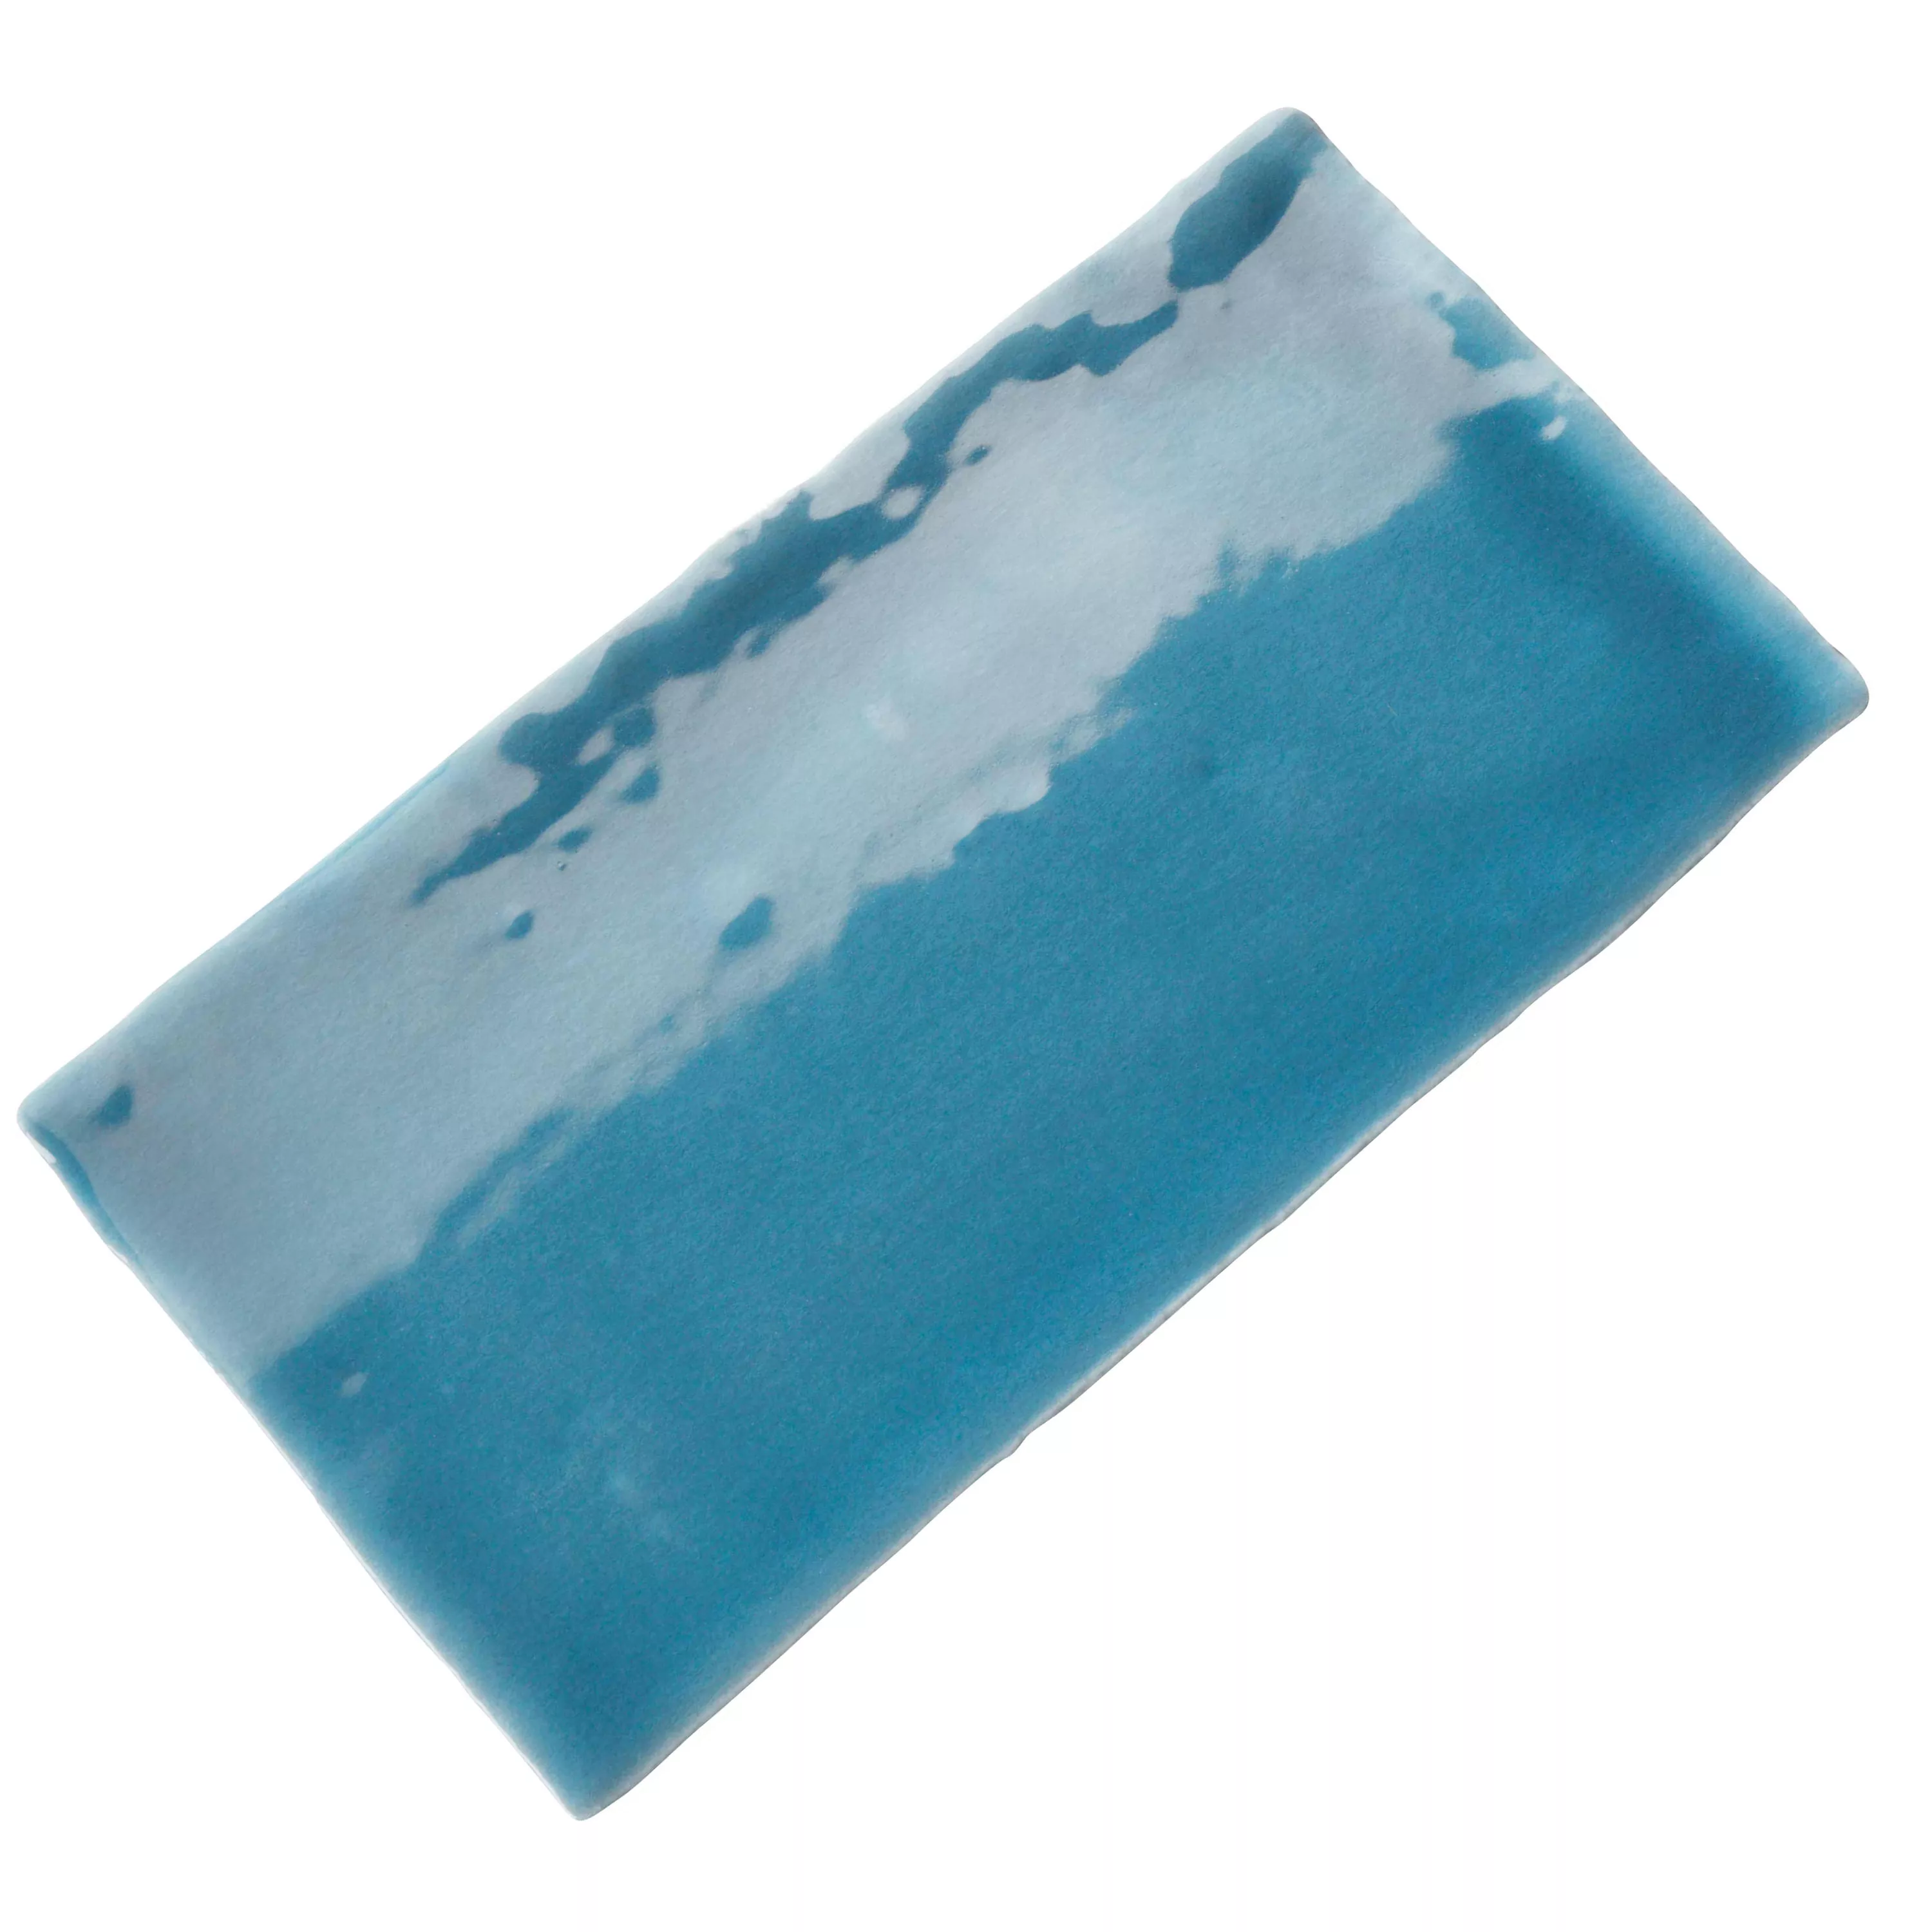 Muster Wandfliese Algier Handgemacht 7,5x15cm Meerblau